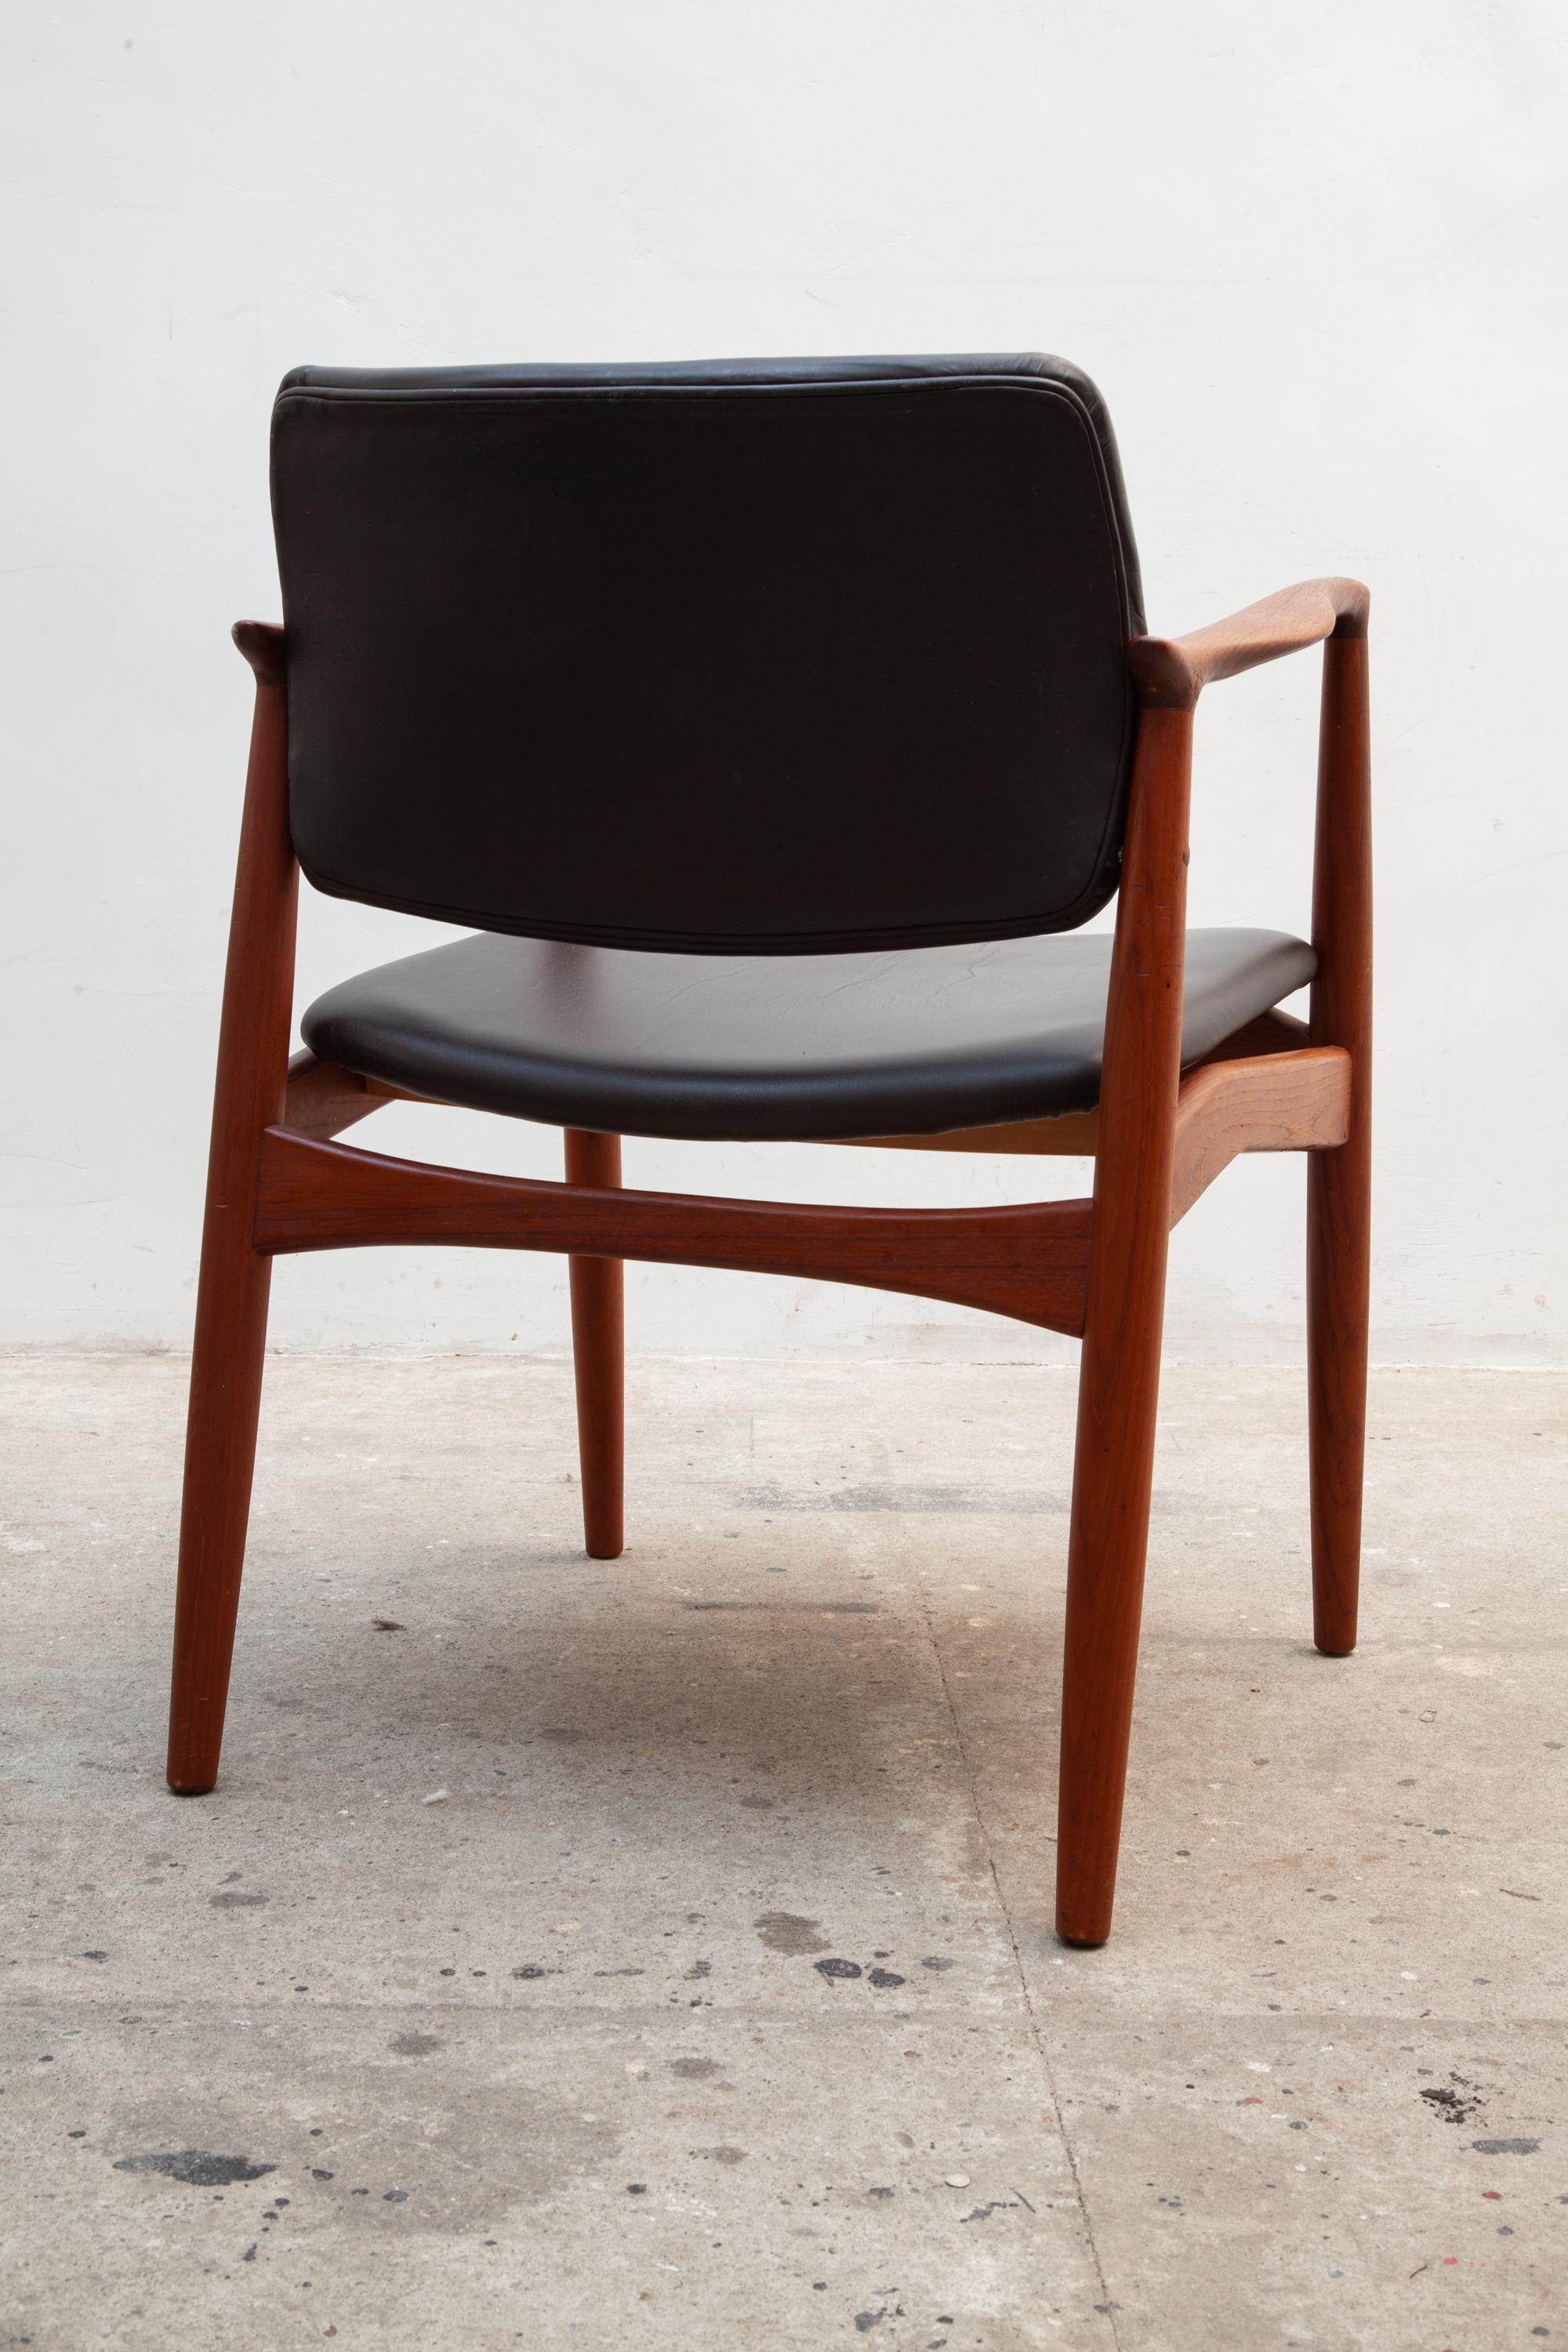 Scandinavian Modern 1950s Teak Side Chair by Arne Vodder for Sibast, Denmark